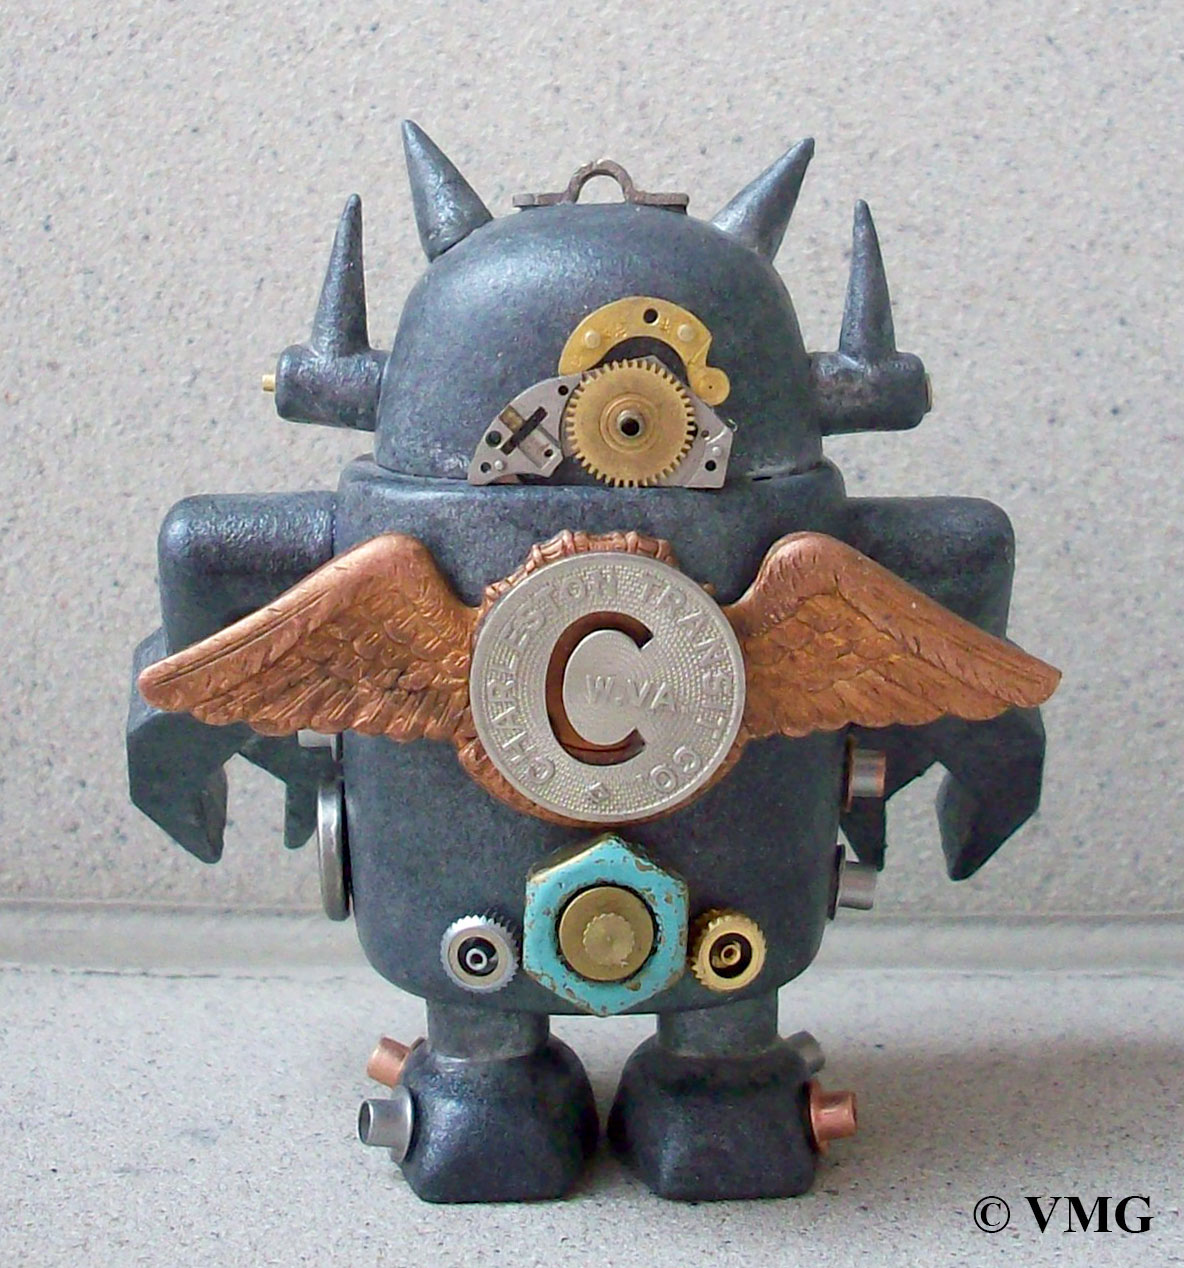 Pointy Max uglydoll david horvath Sun-Min Kim Heathrow Frank Kozik big boss robot Giant robot Custom Urban vinyl art toys STEAMPUNK clockwork